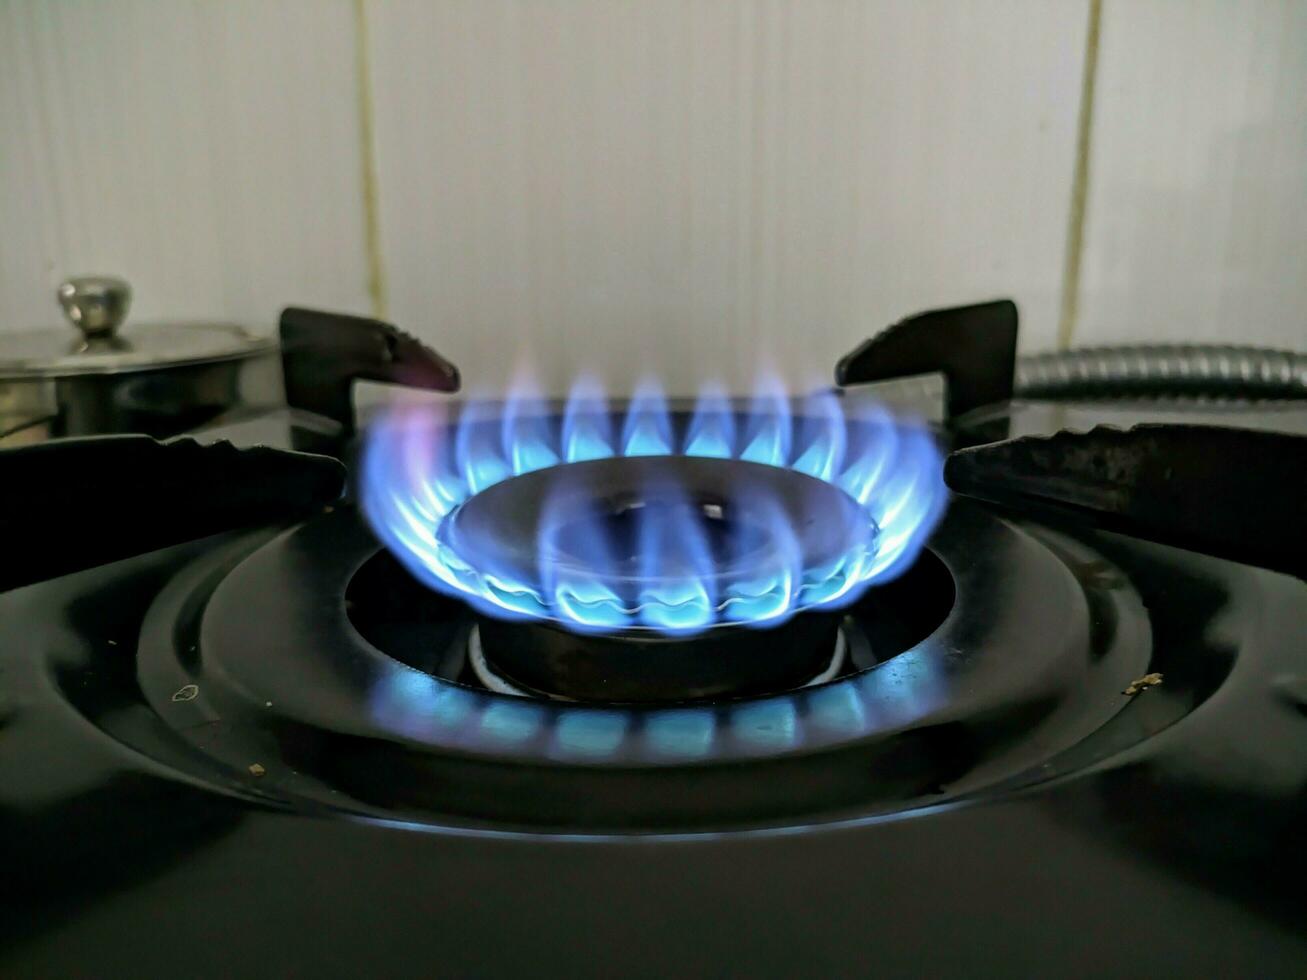 zwart gas- fornuis met blauw vlam brandend foto